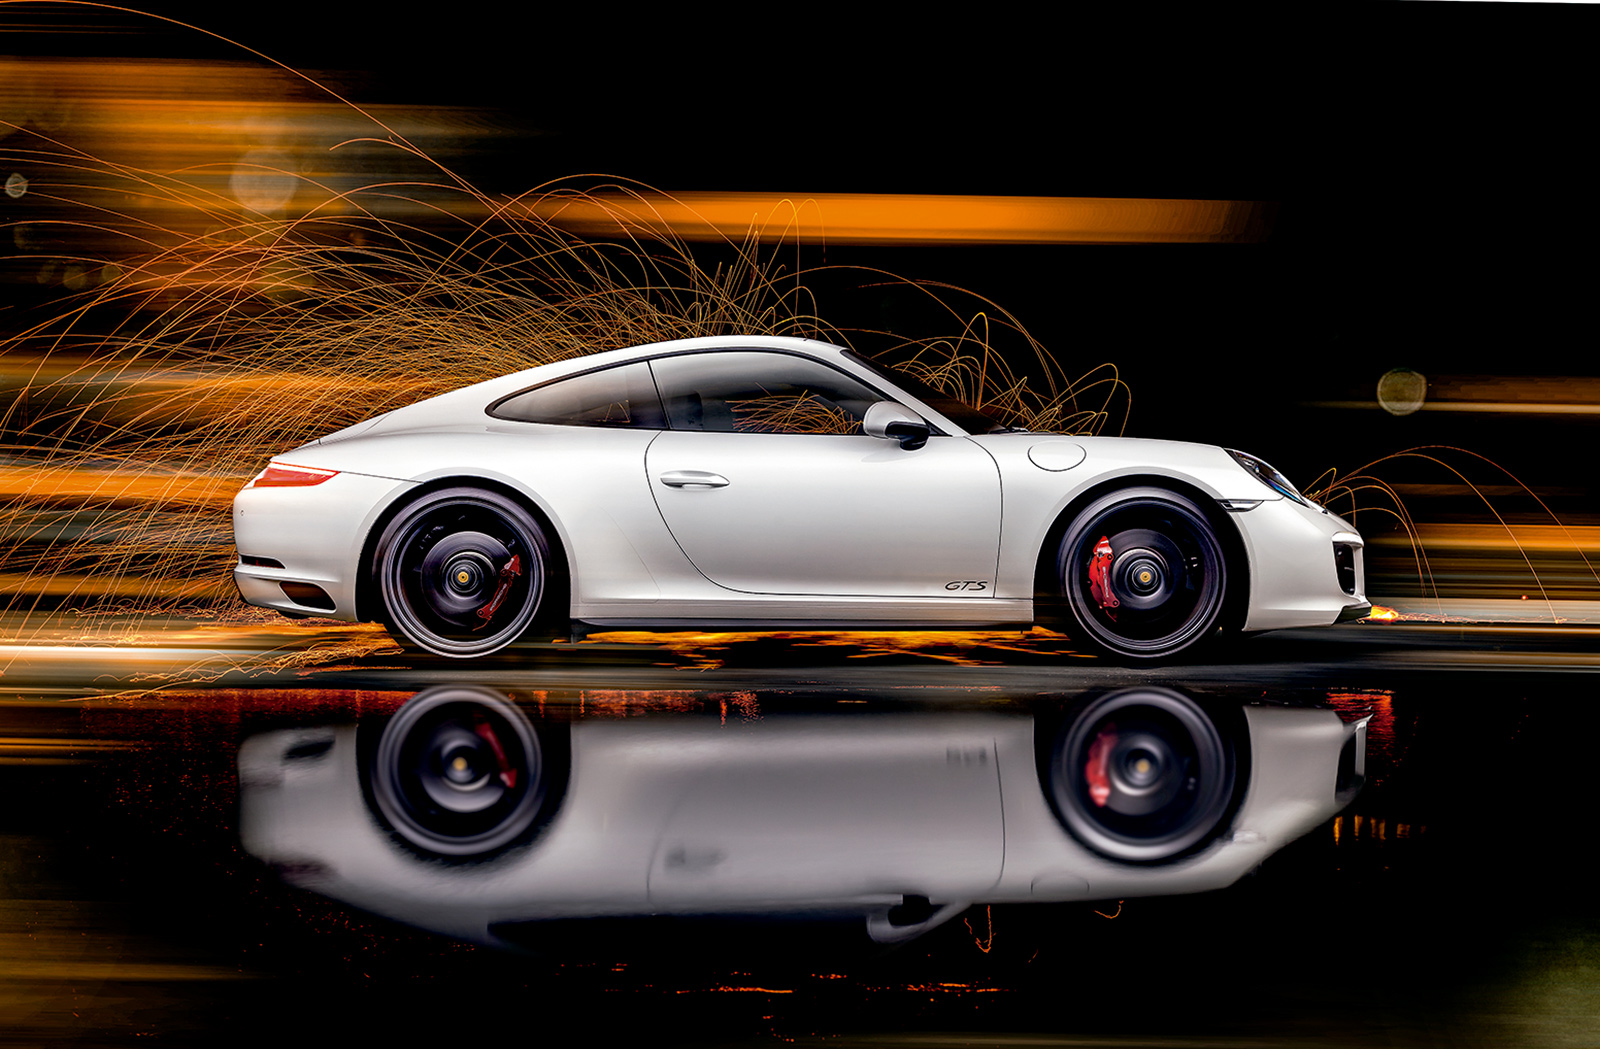 Na rozpędzenie się od 0 do 100 km/h 911 GTS potrzebuje 3,6 sekundy